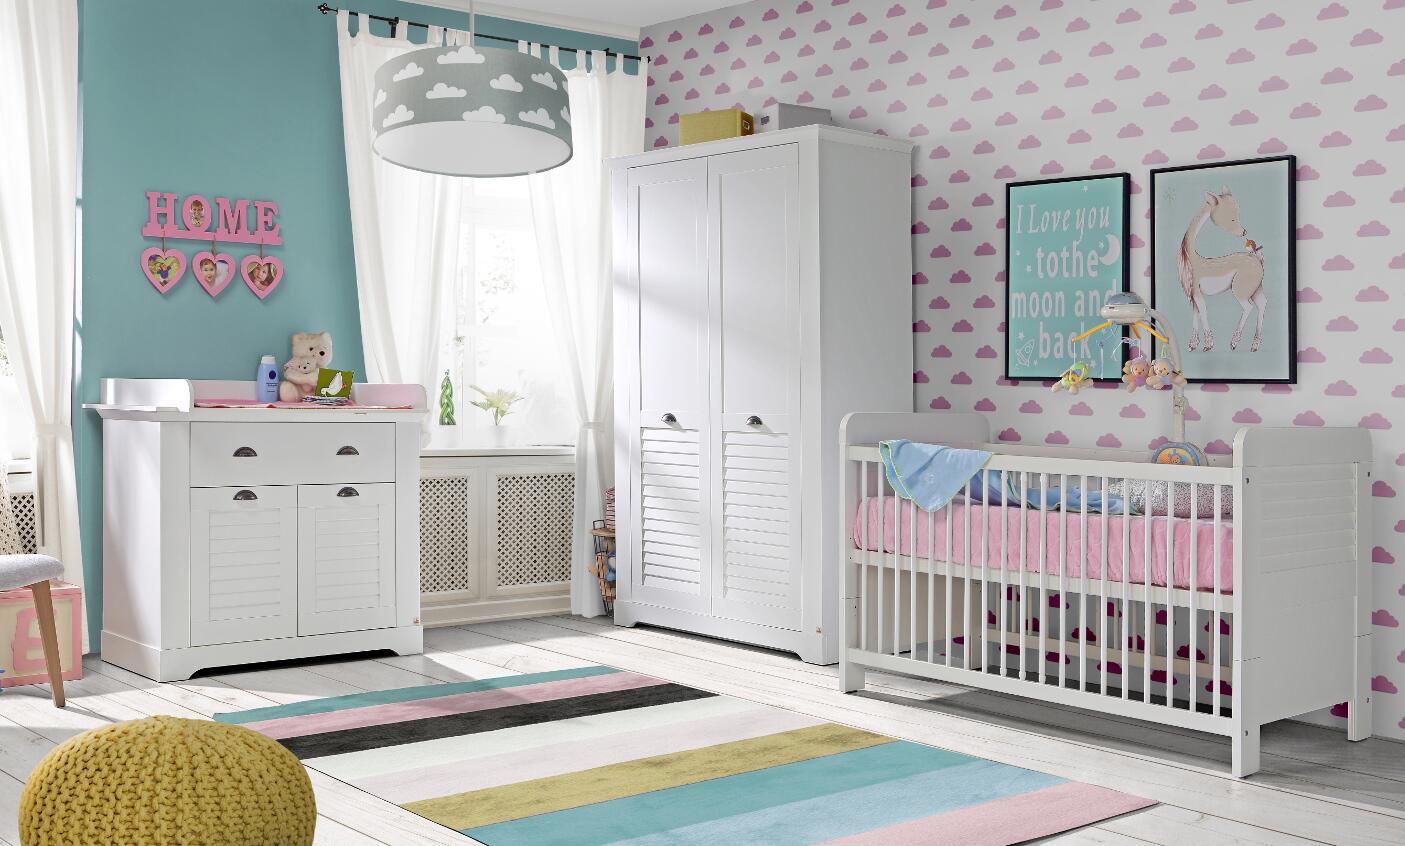 Wizualizacja przedstawia pokój dziecięcy, widzimy komodę wraz z przewijakiem, szafę oraz łóżeczko dziecięce.